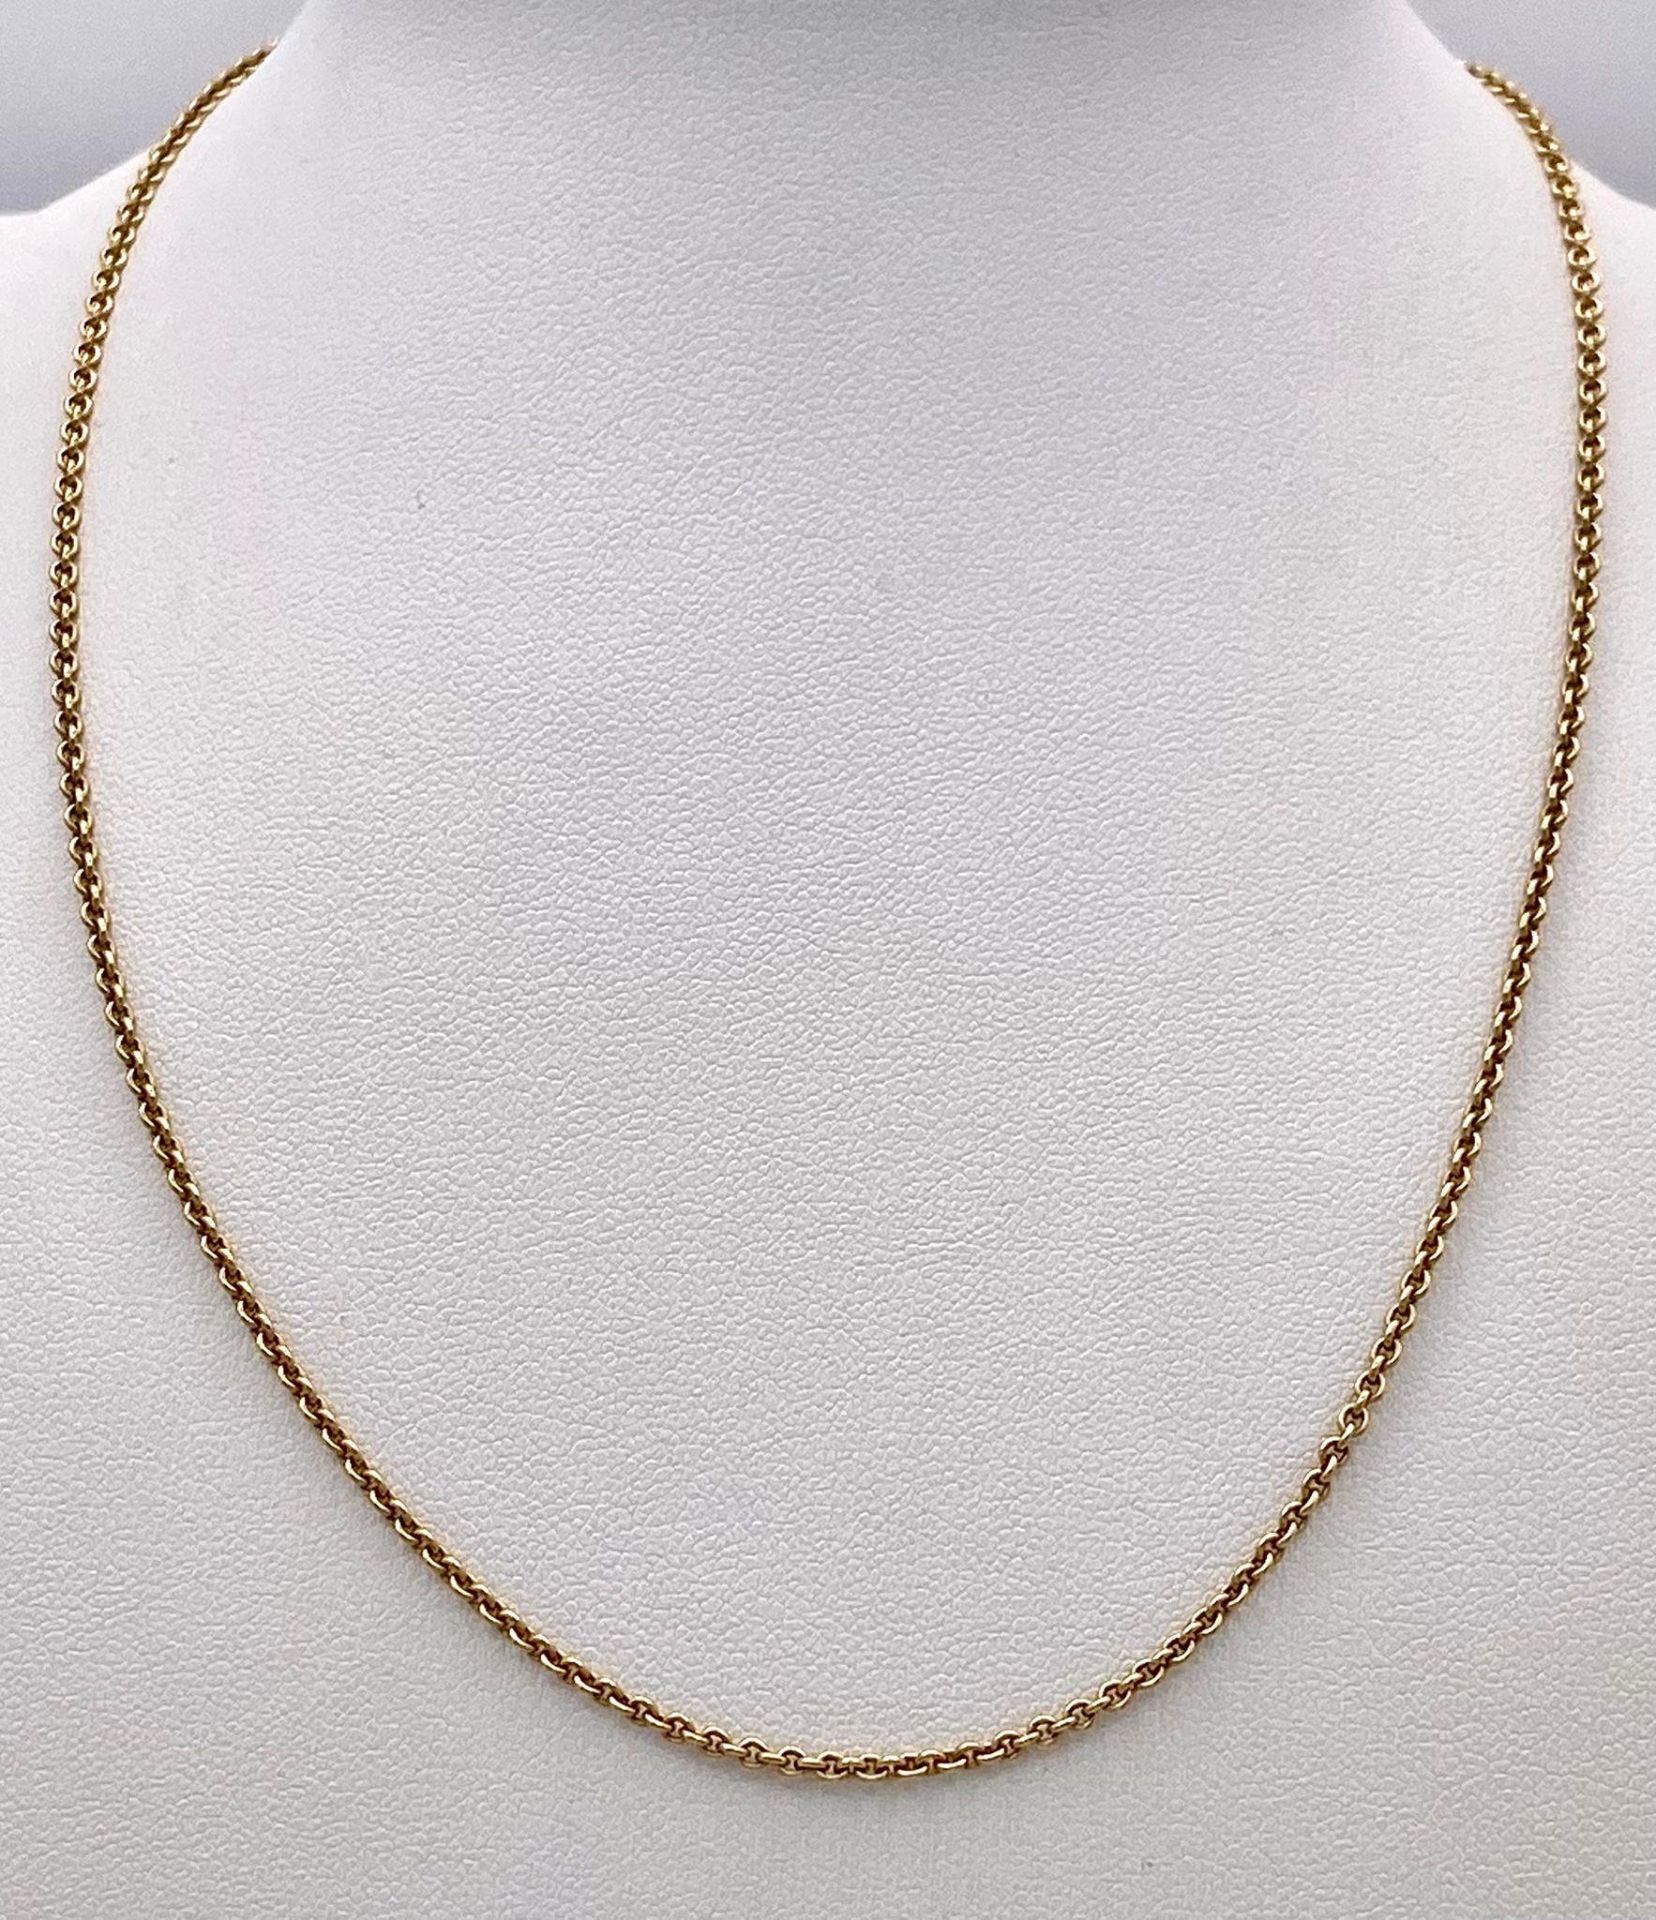 A 9k Yellow Gold Small Belcher Link Necklace. 41cm. 4.1g weight. - Bild 3 aus 6